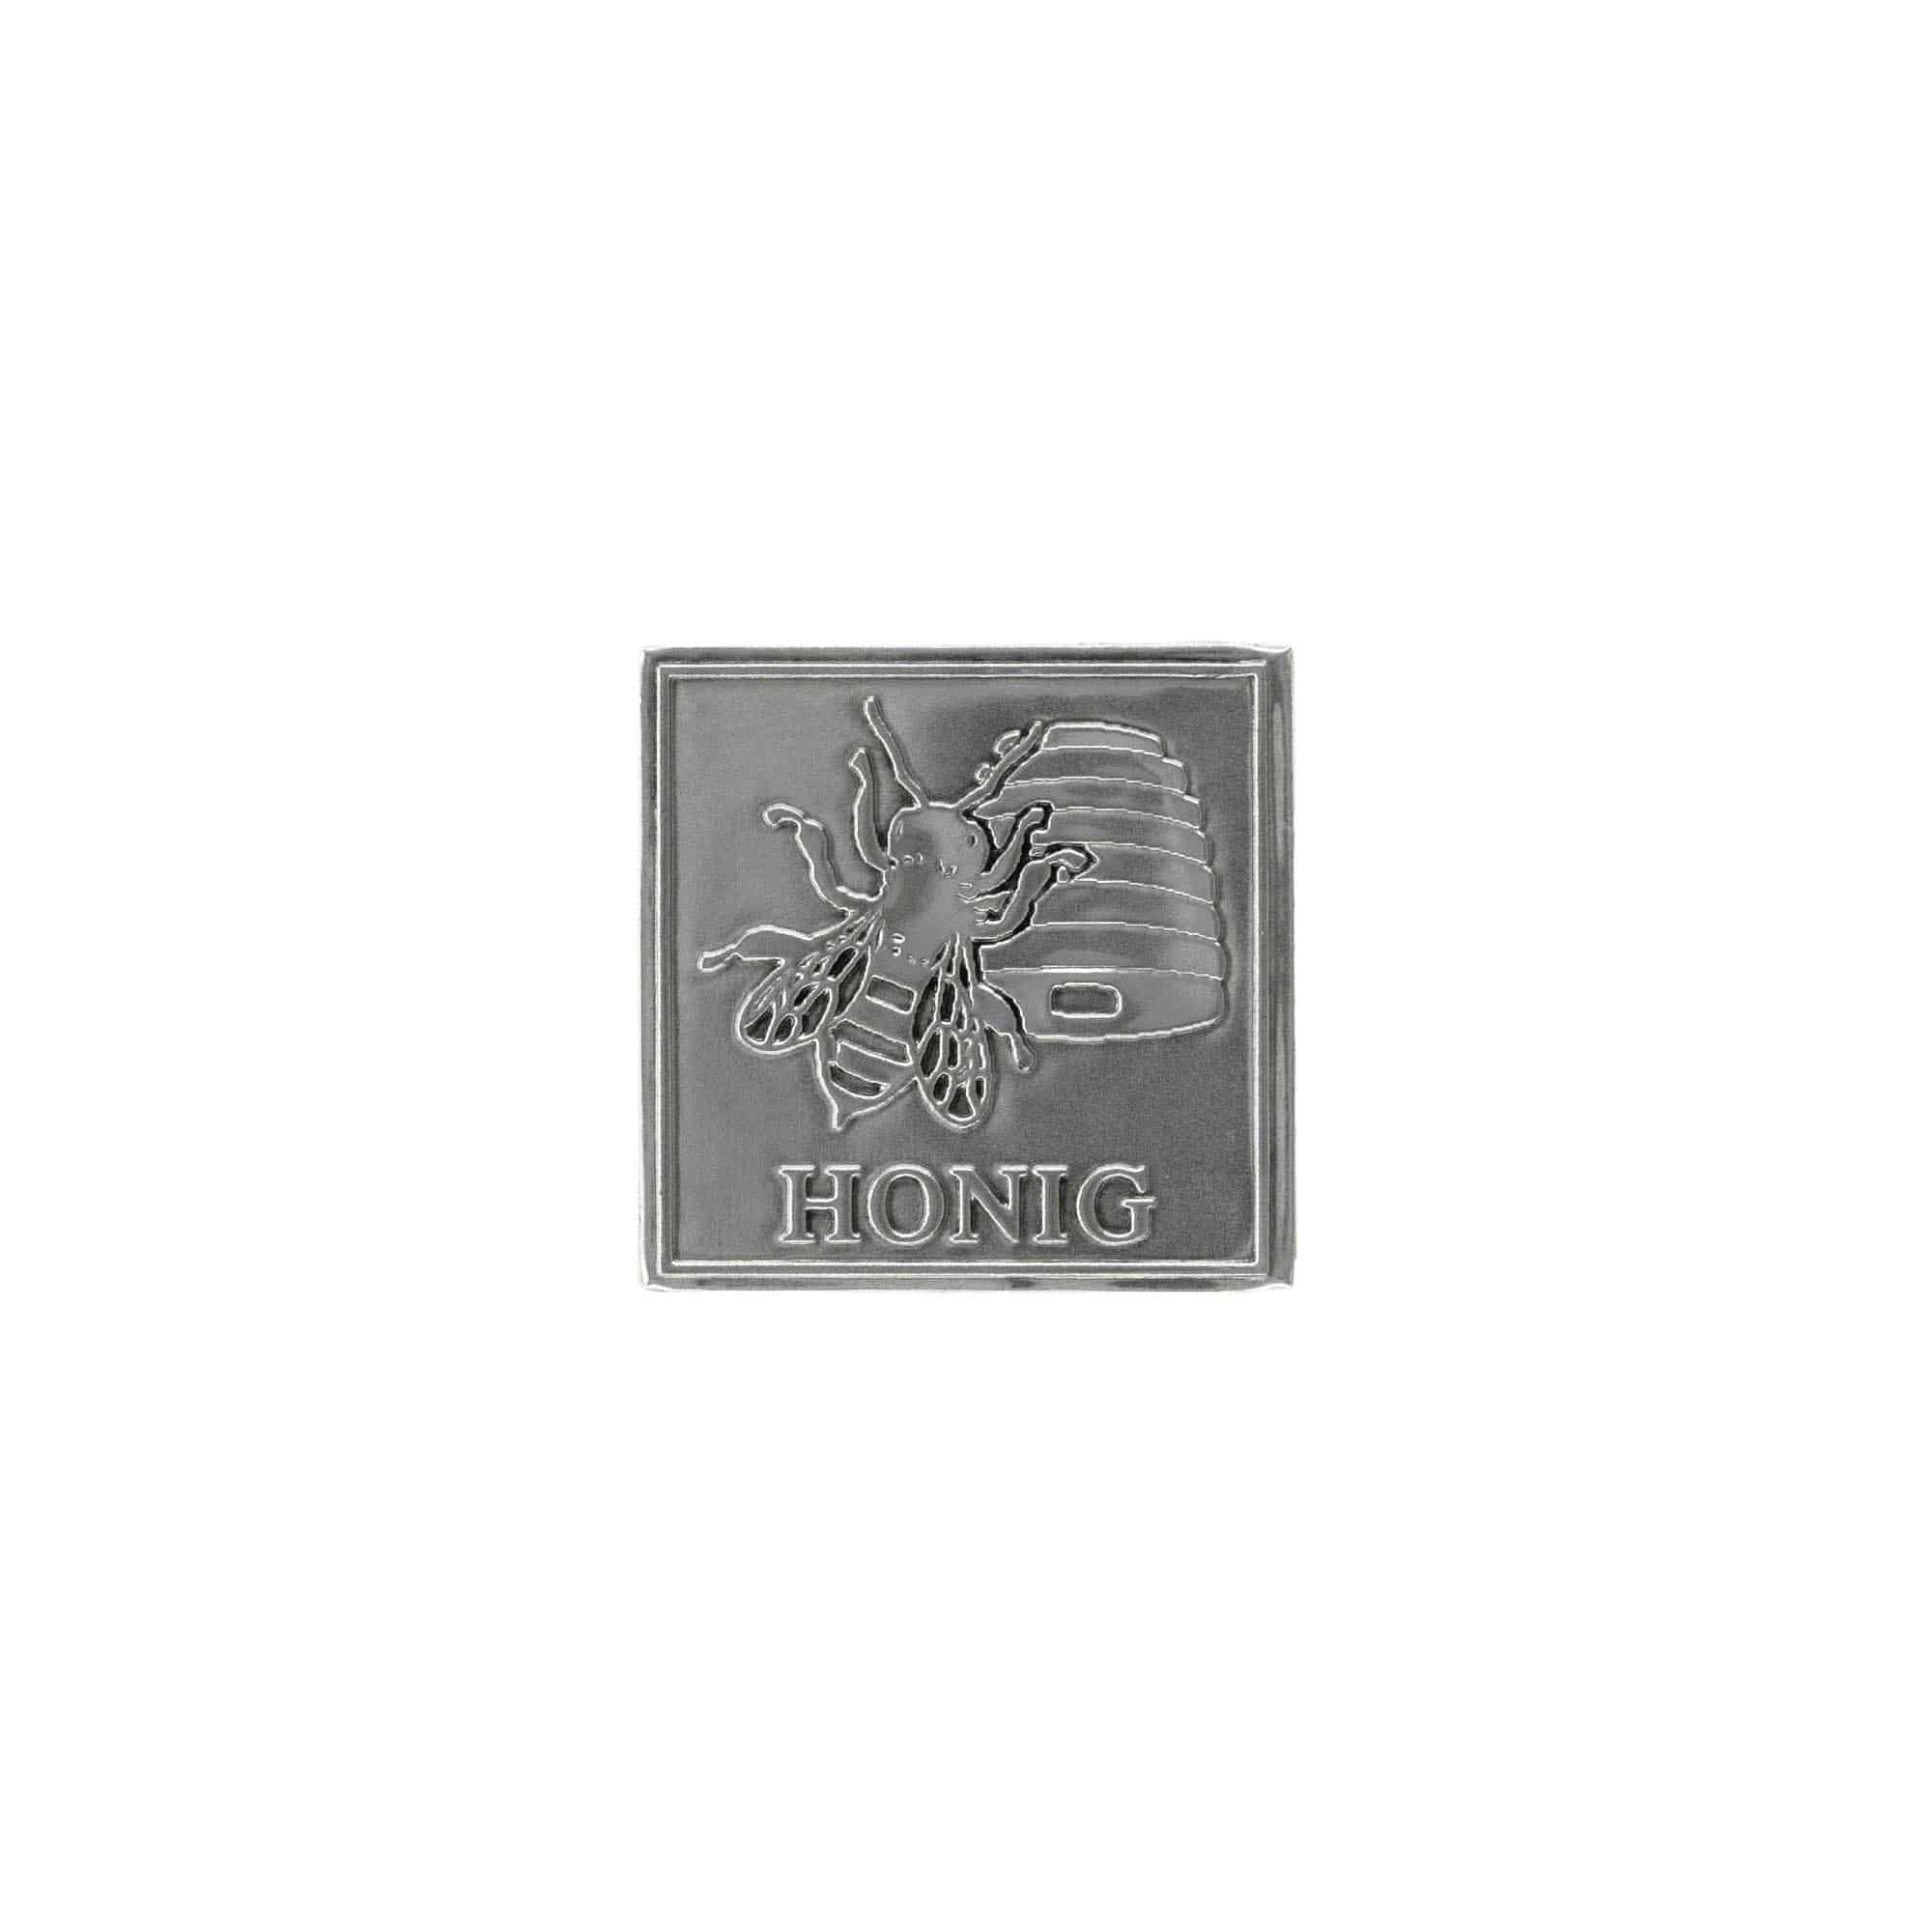 Etykieta cynowa 'Miód', kwadratowa, metal, kolor srebrny